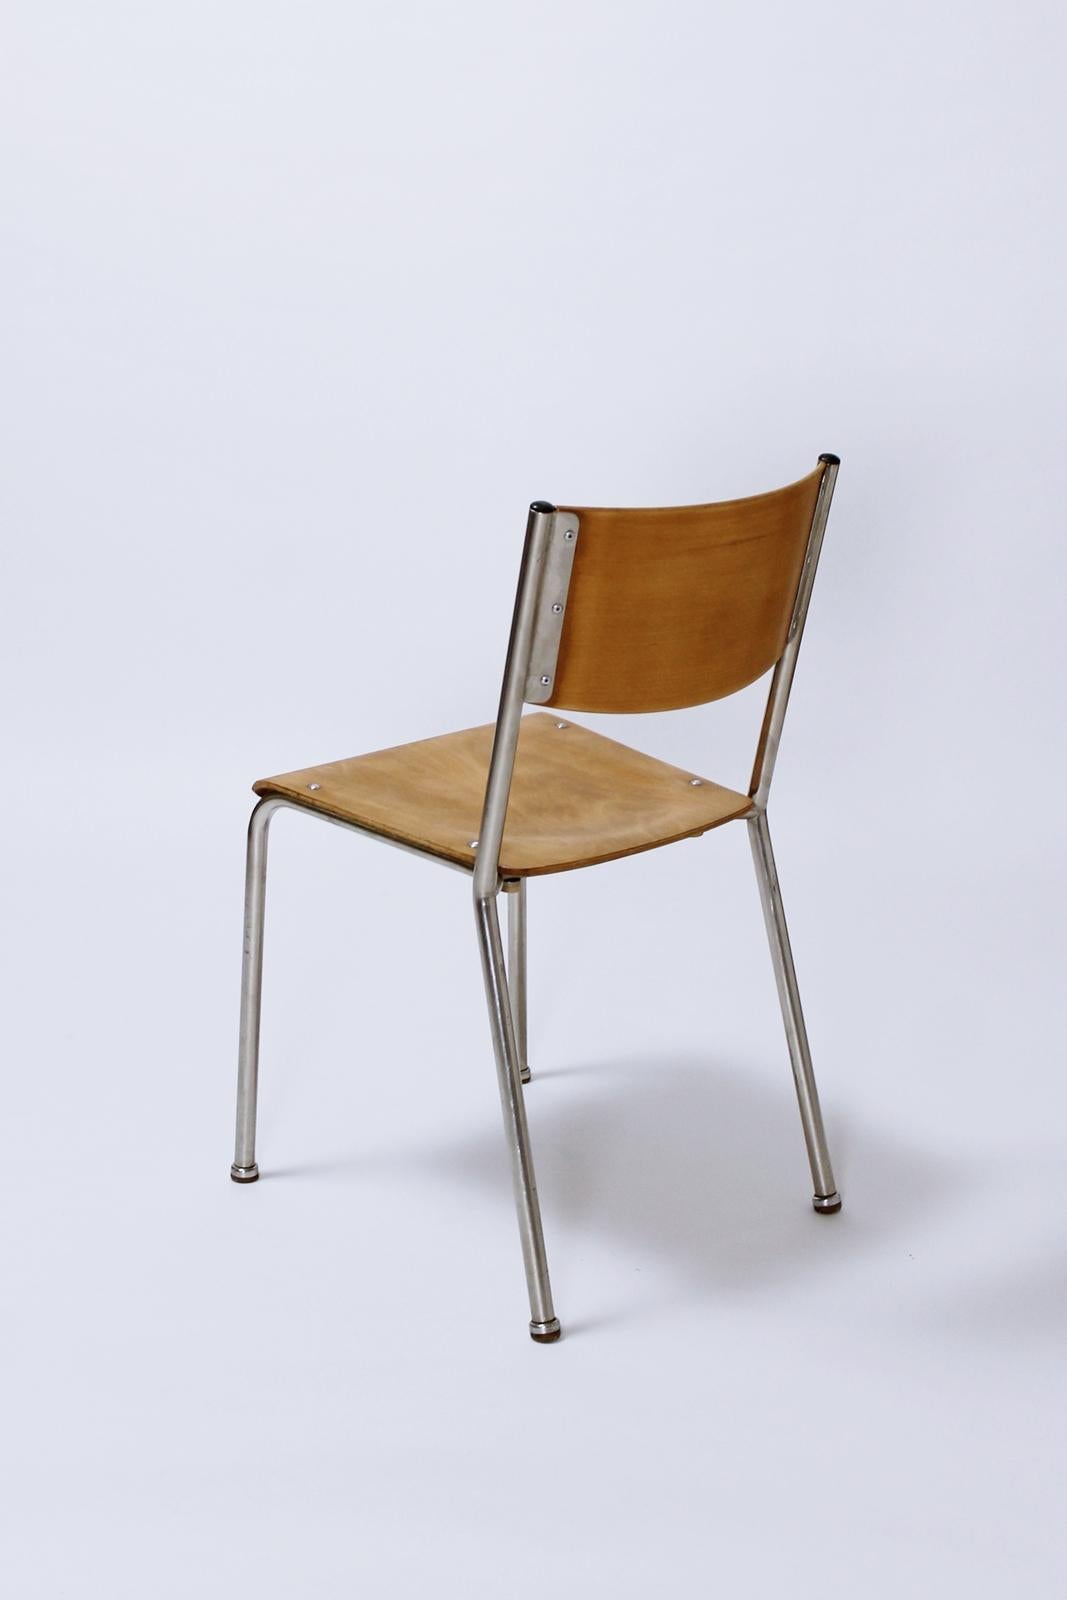 Swiss Bauhaus Tubular chairs by Gustav Hassenpflug for Embru Werke 1934 2